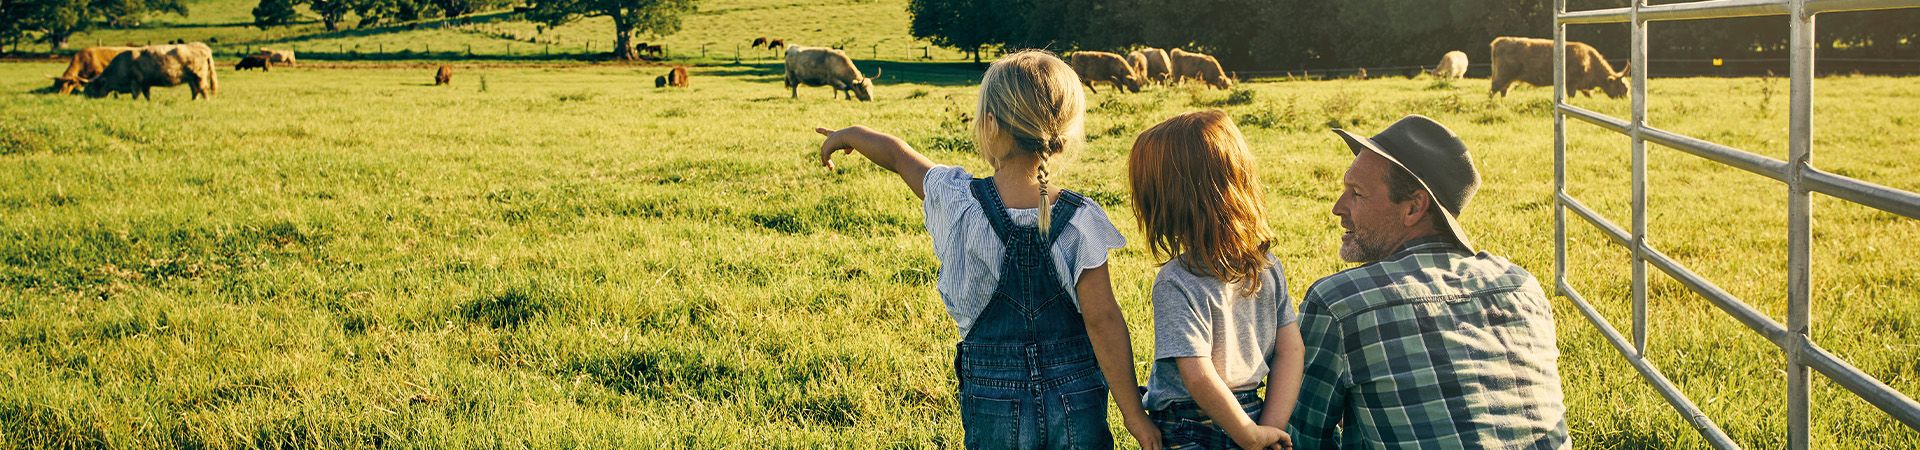 Duurzame vakantie met kinderen: Vader kijkt met zijn kinderen naar de koeien op een boerderij.